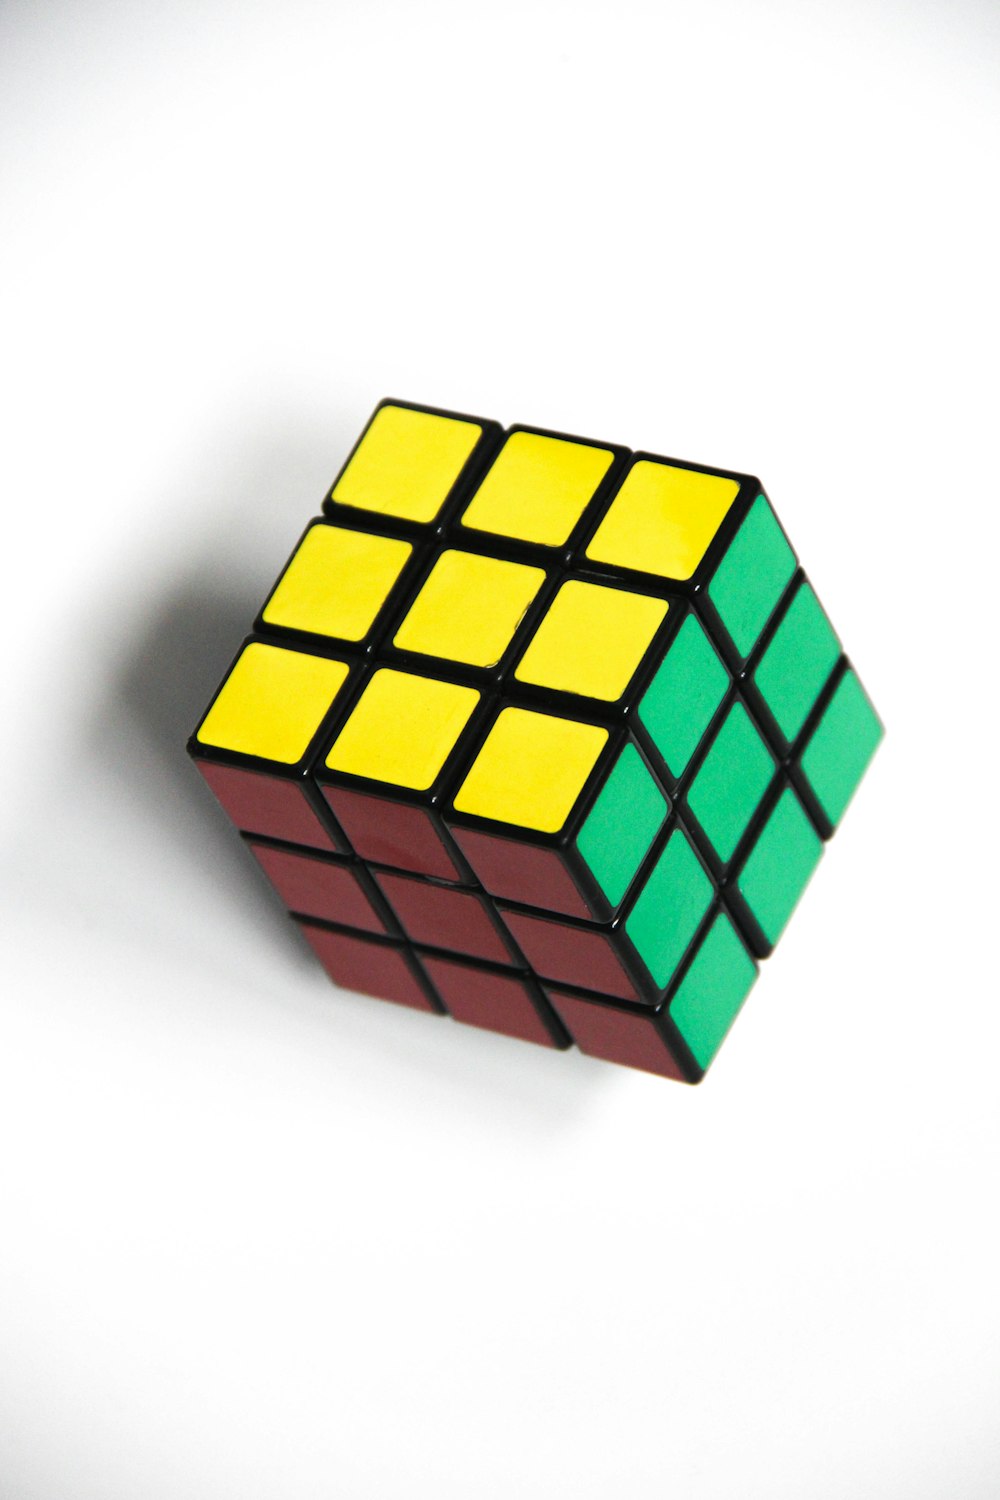 Un cubo de Rubik sentado encima de una mesa blanca